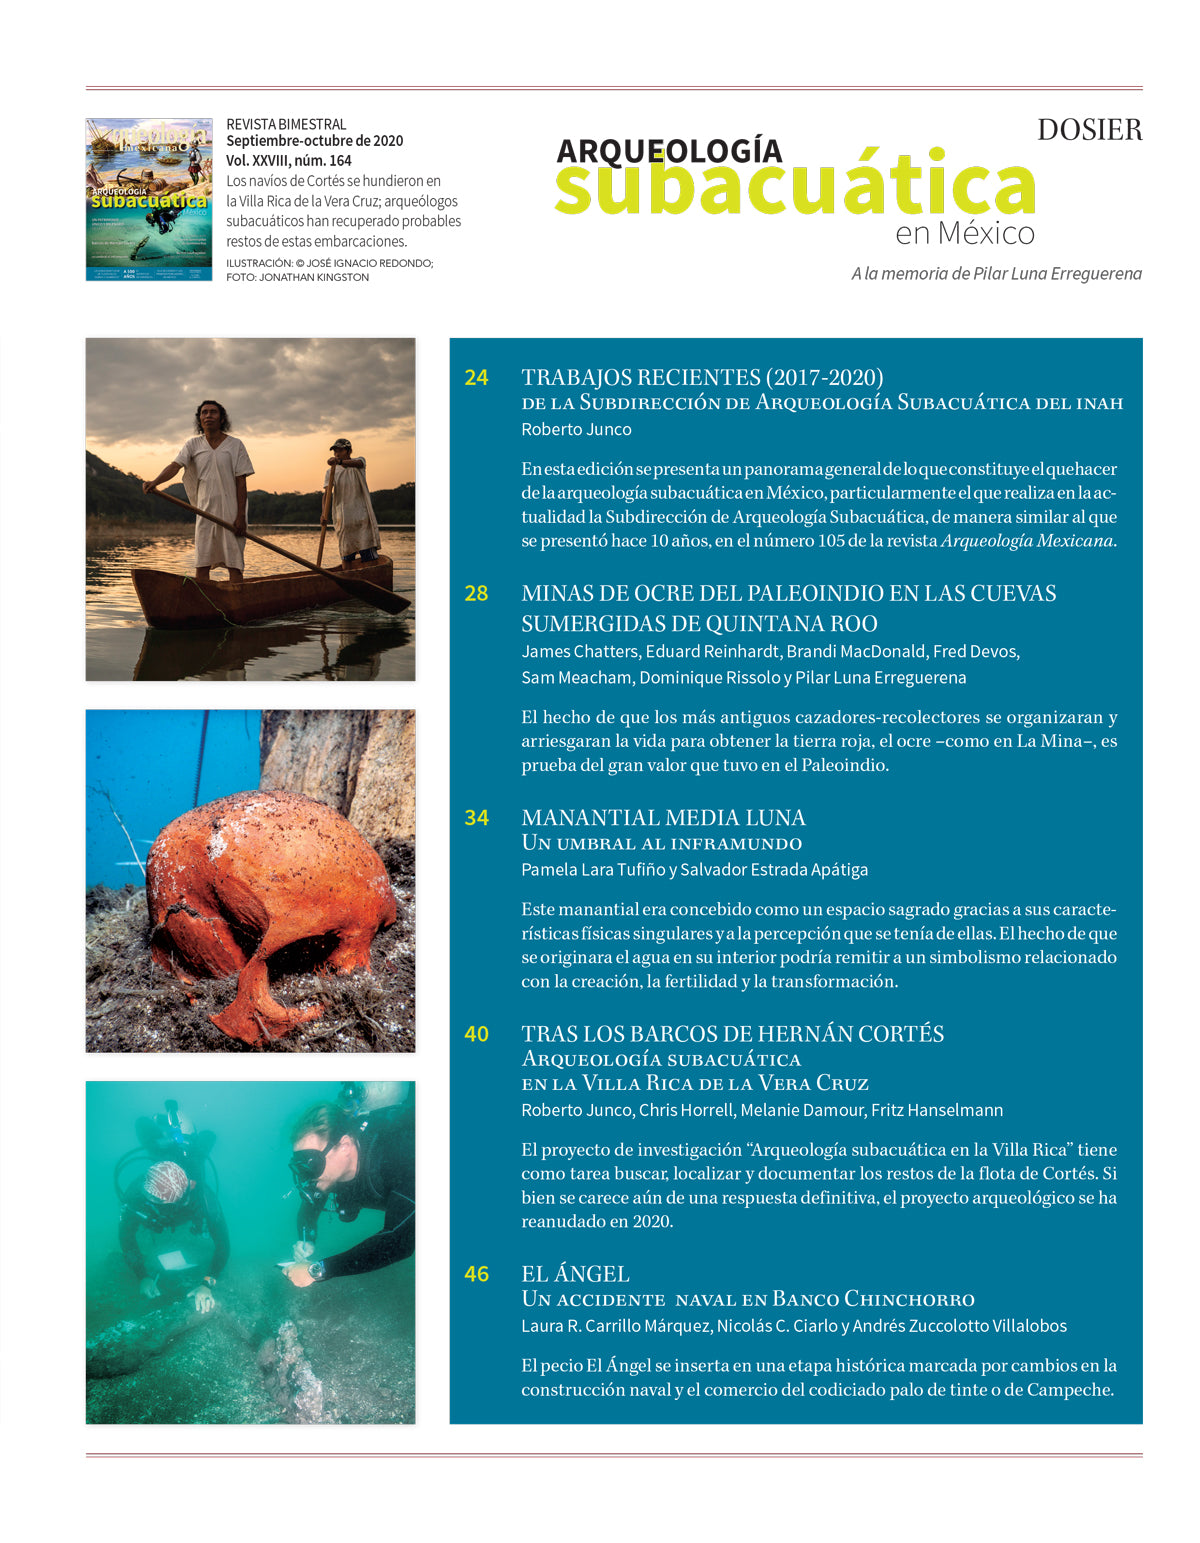 Arqueología subacuática en México